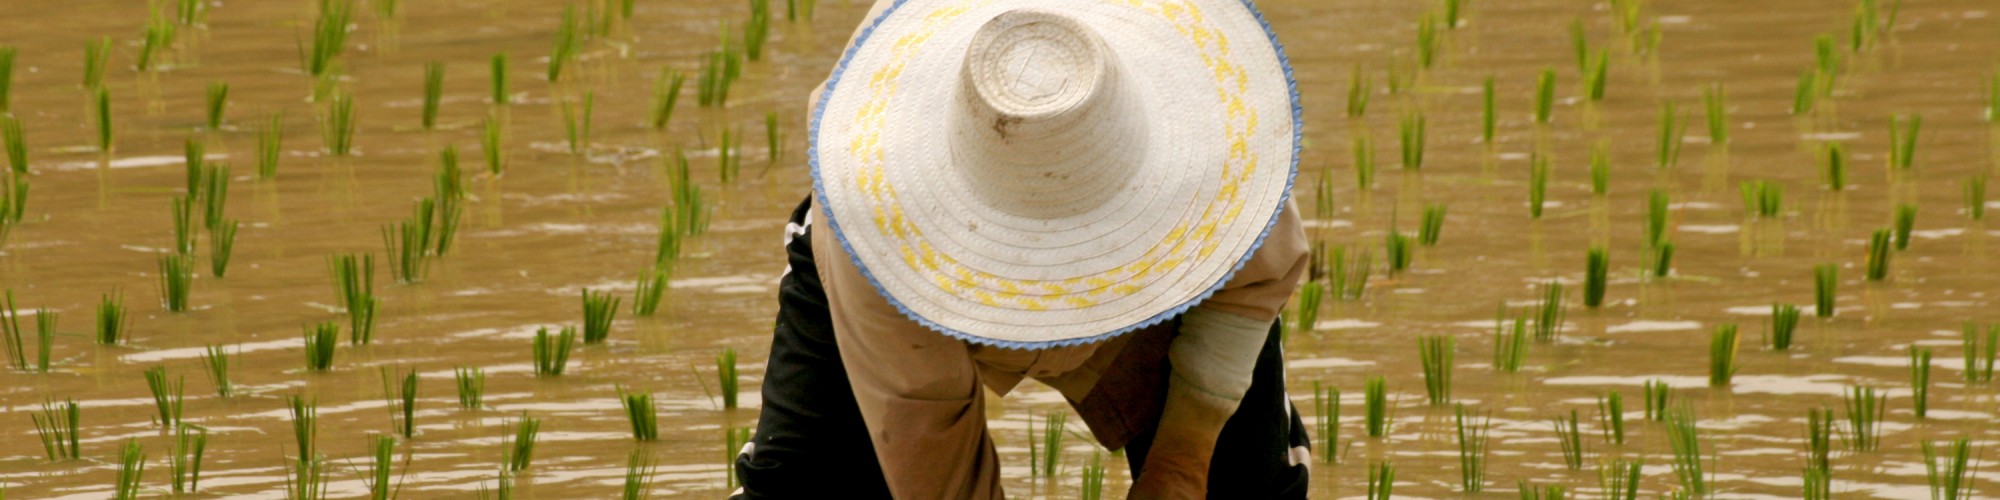 thai farmer